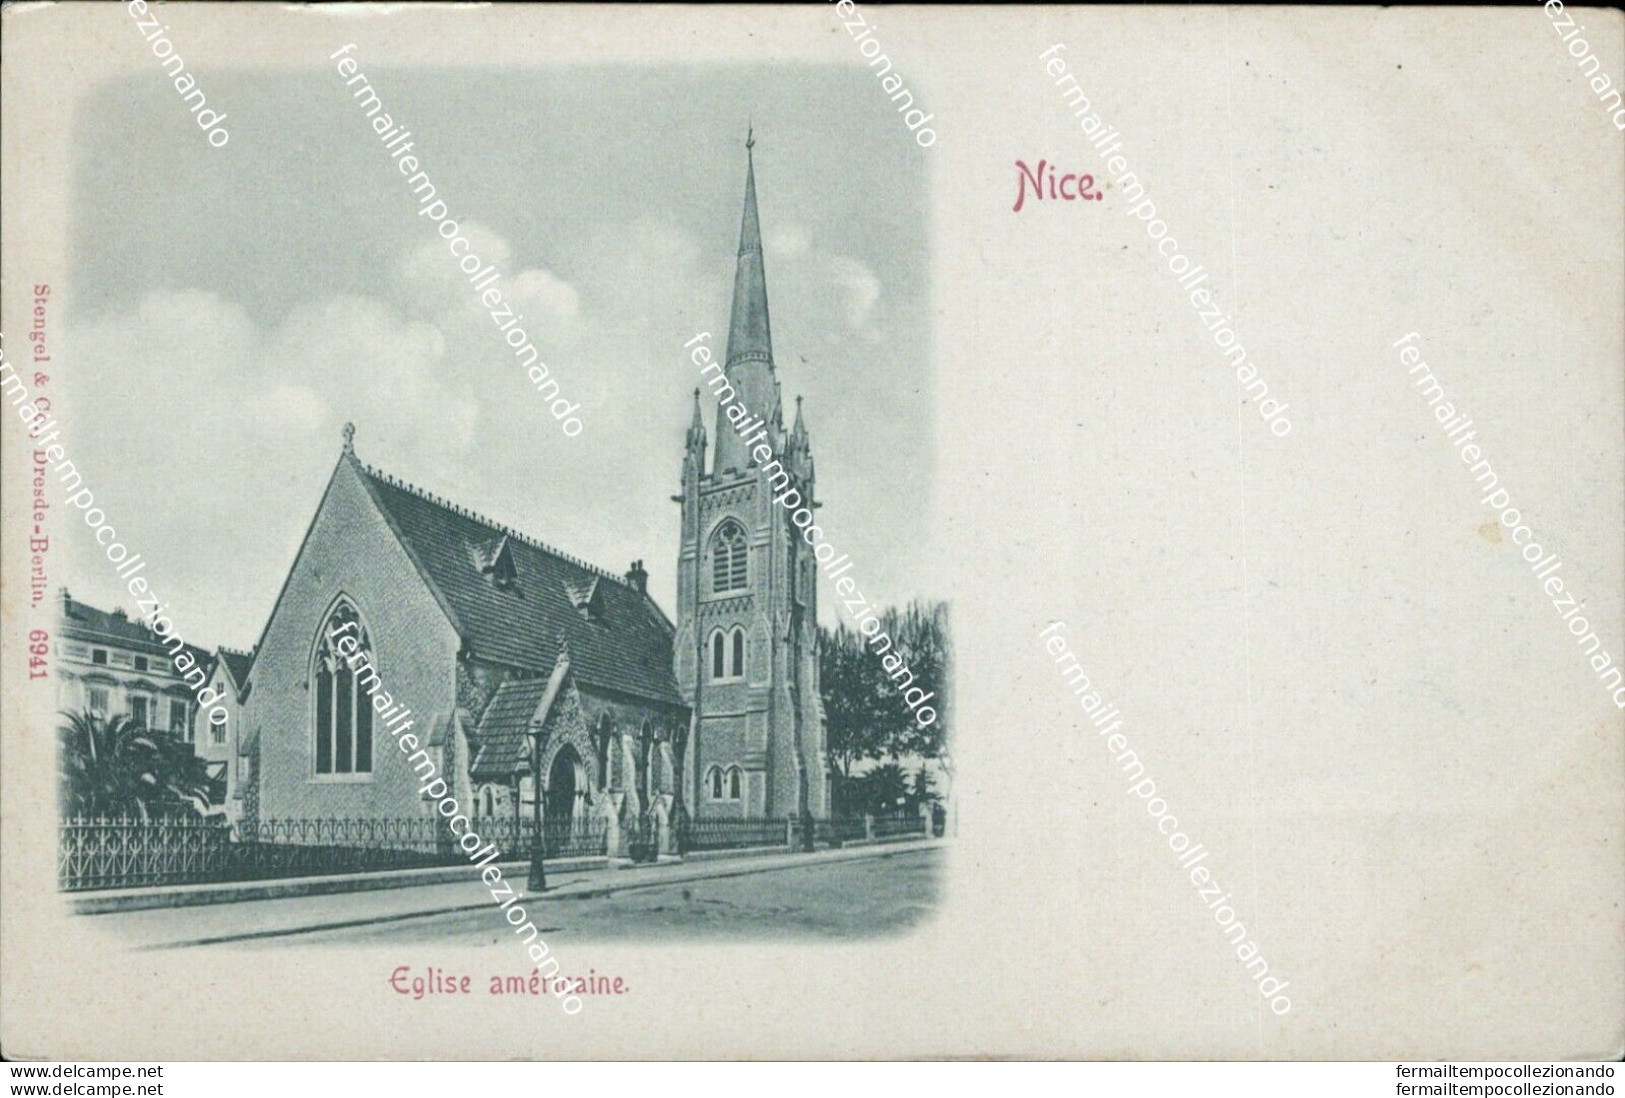 Bd78 Cartolina Nice Eglise Americaine - Monumentos, Edificios